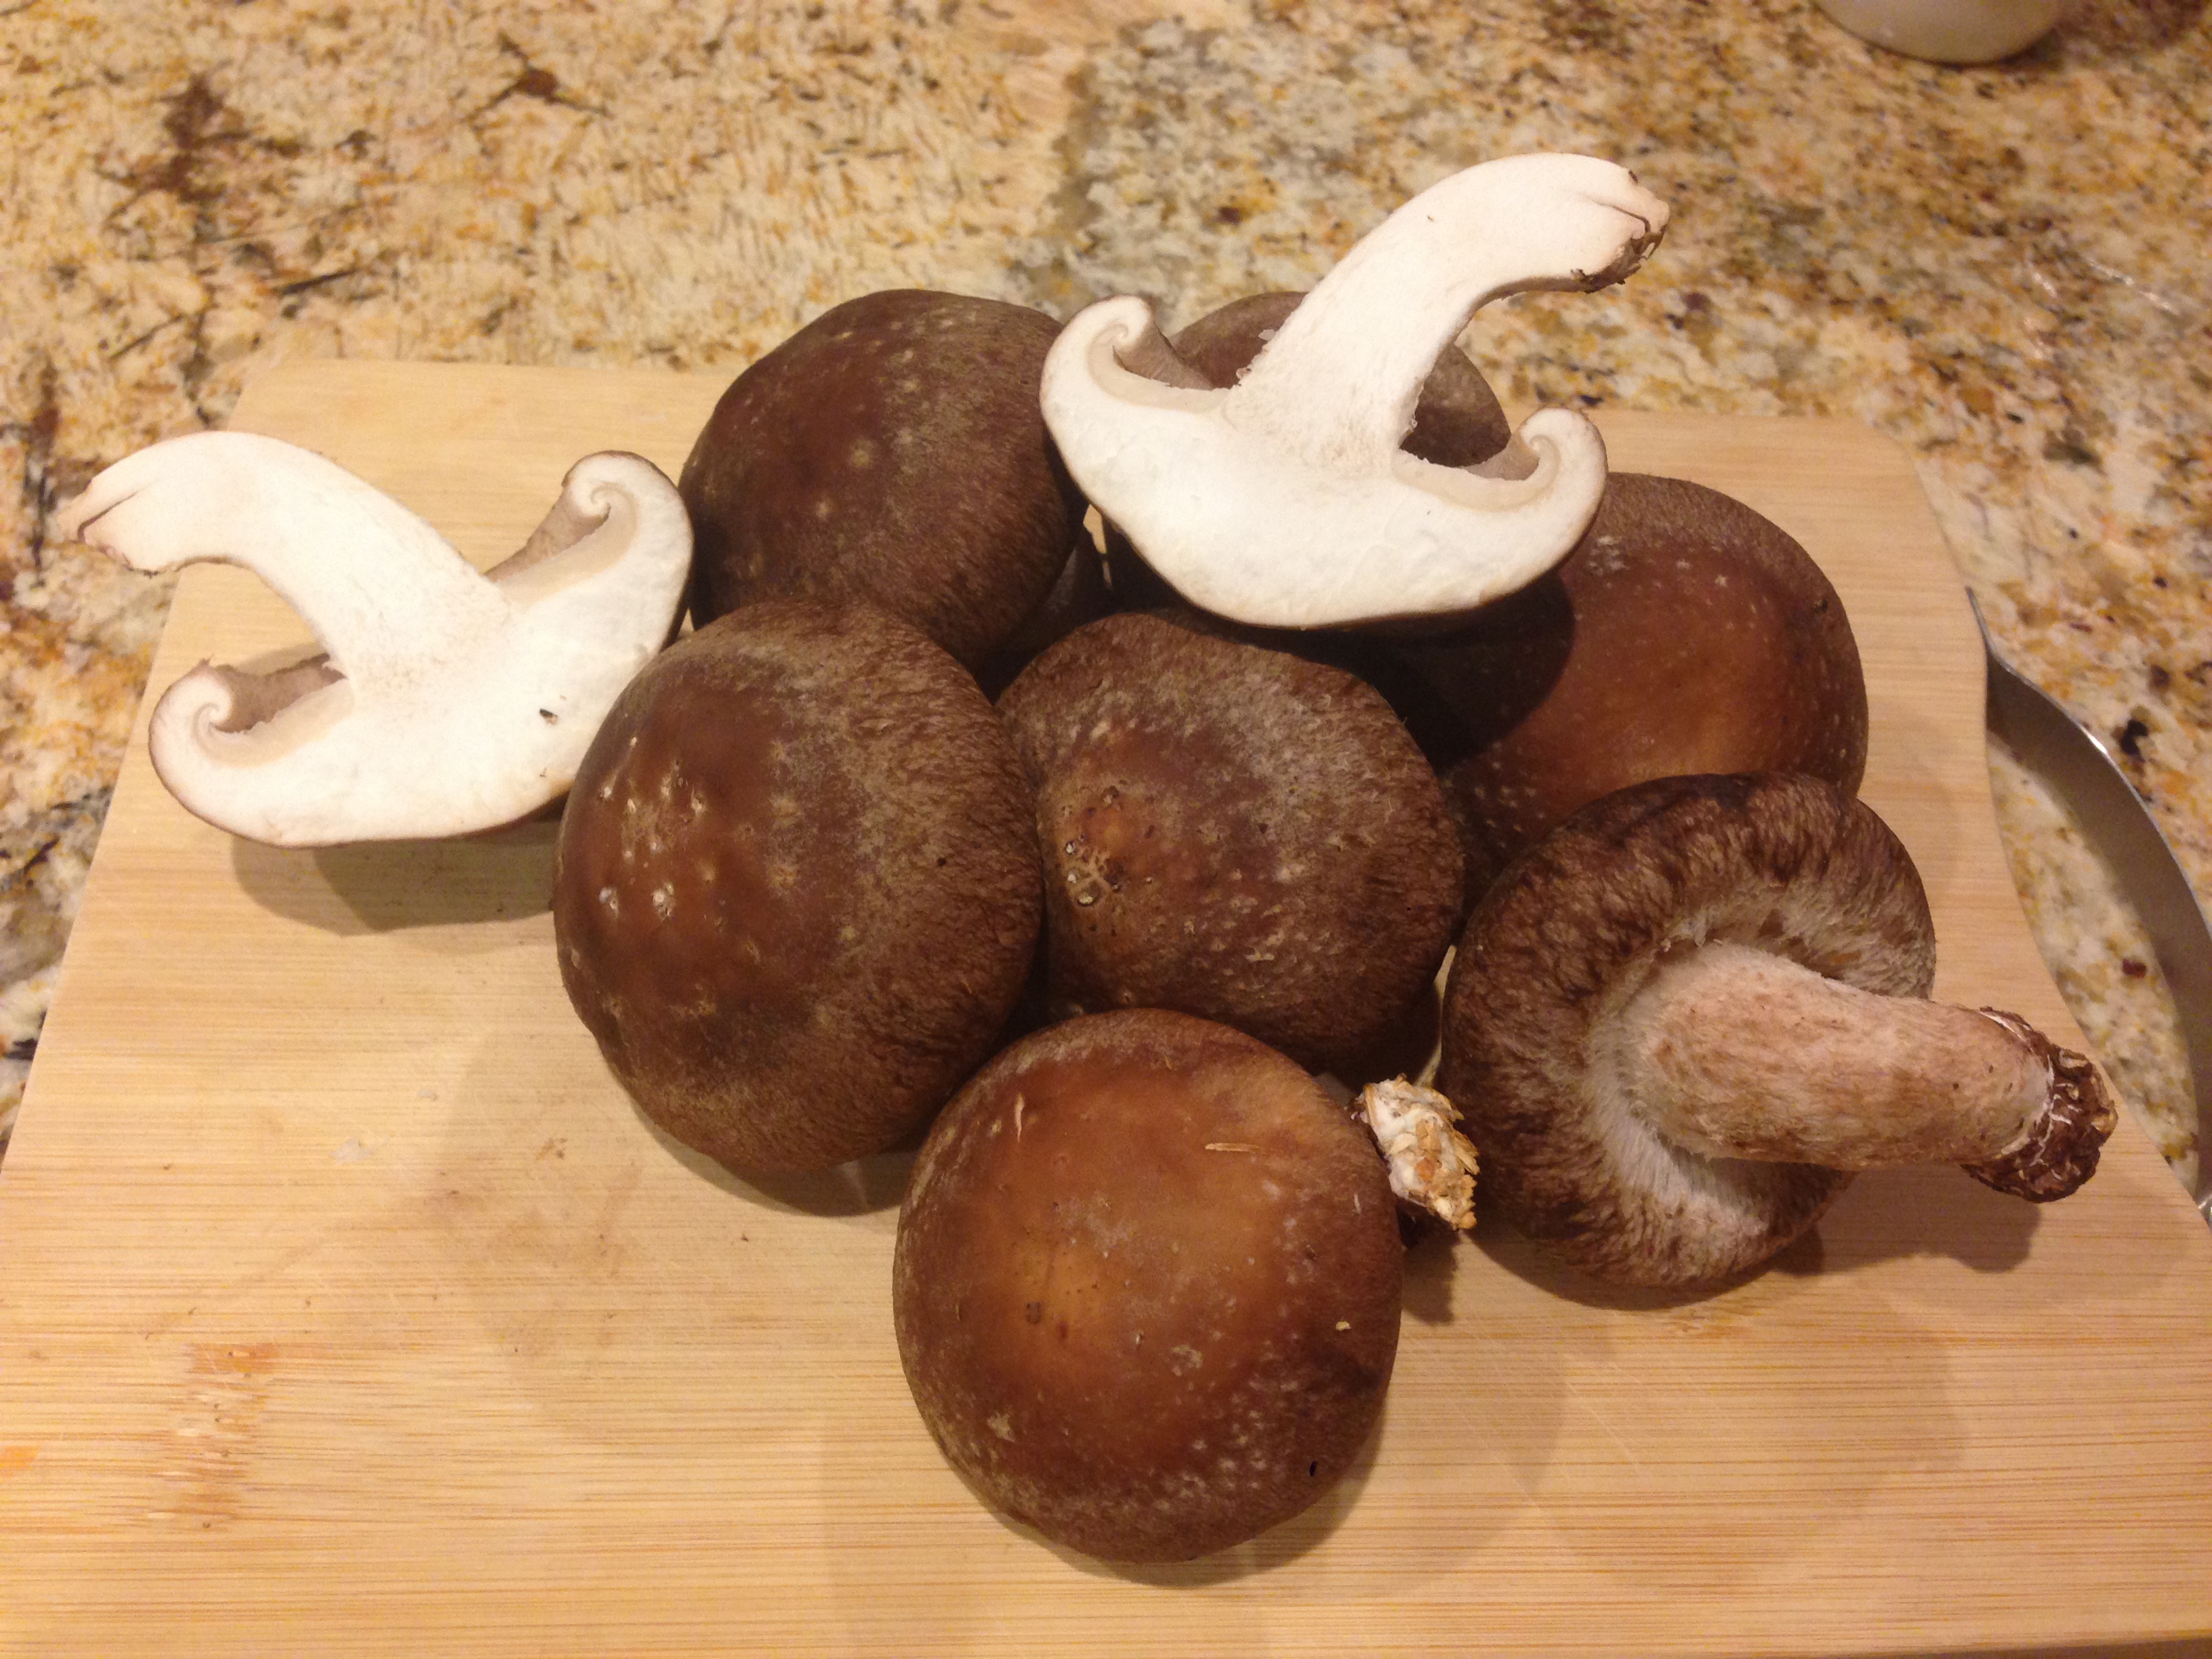 Shitake Mushrooms (1 lb)